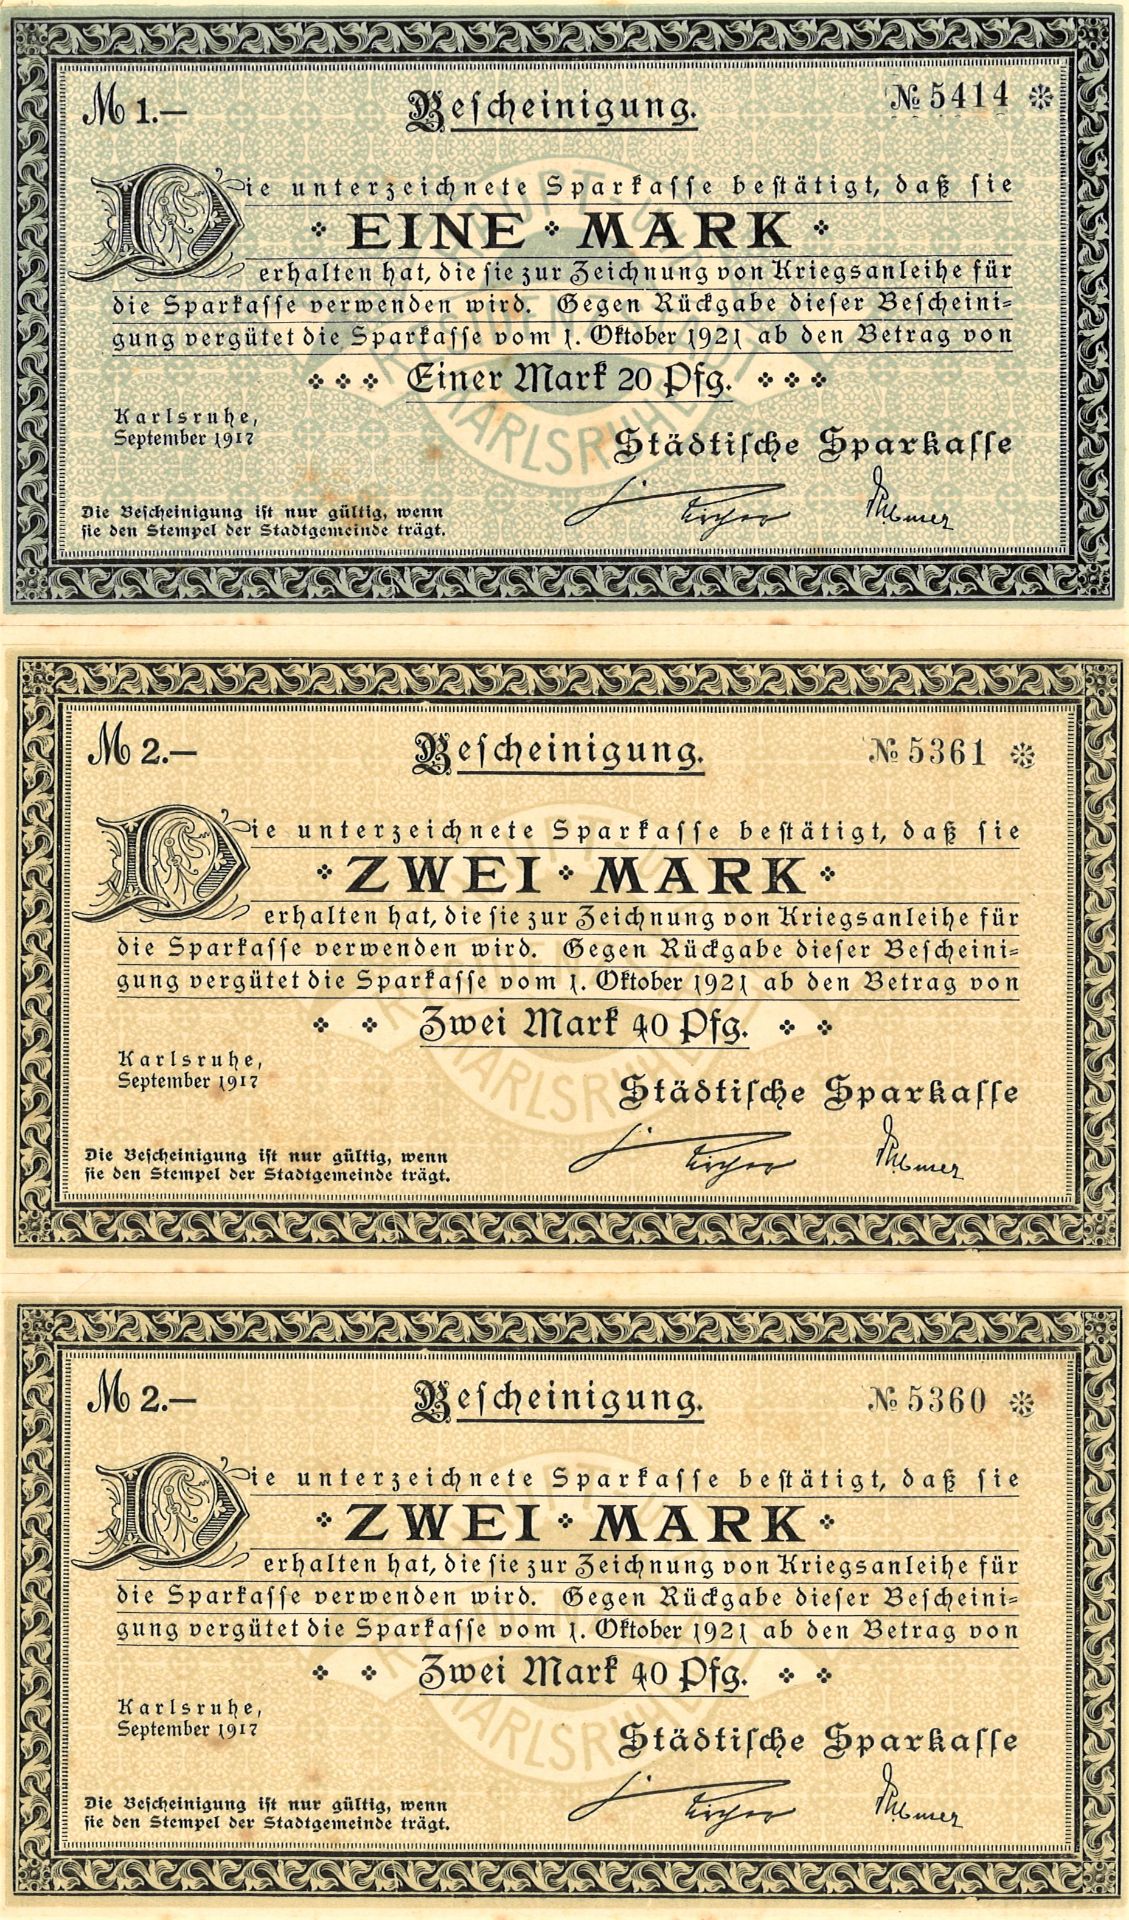 Banknoten / Kriegsanleihe, 3 Scheine der städtischen Sparkasse Karlsruhe Baden, 2 x 2 Mark, 1 x 1